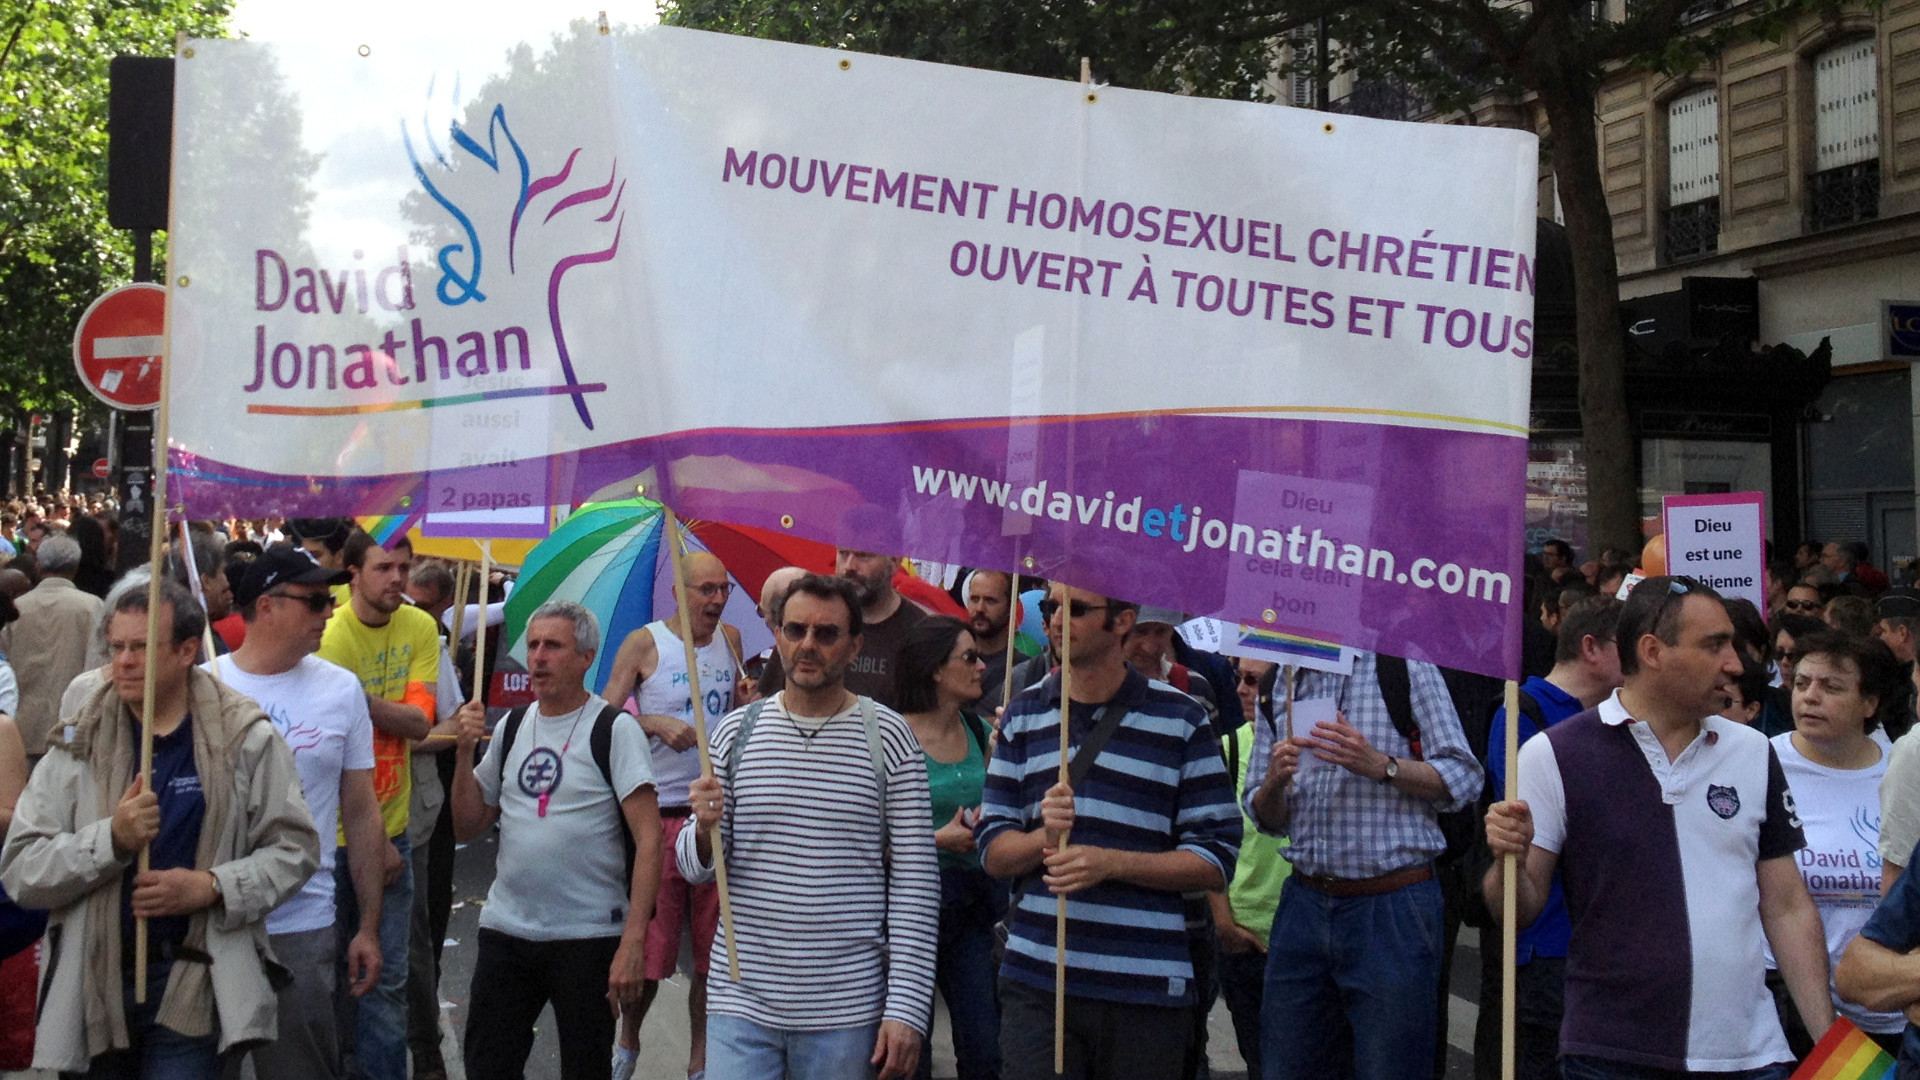 Christliches Bekenntnis zum Schwulsein - Gayparade in Paris